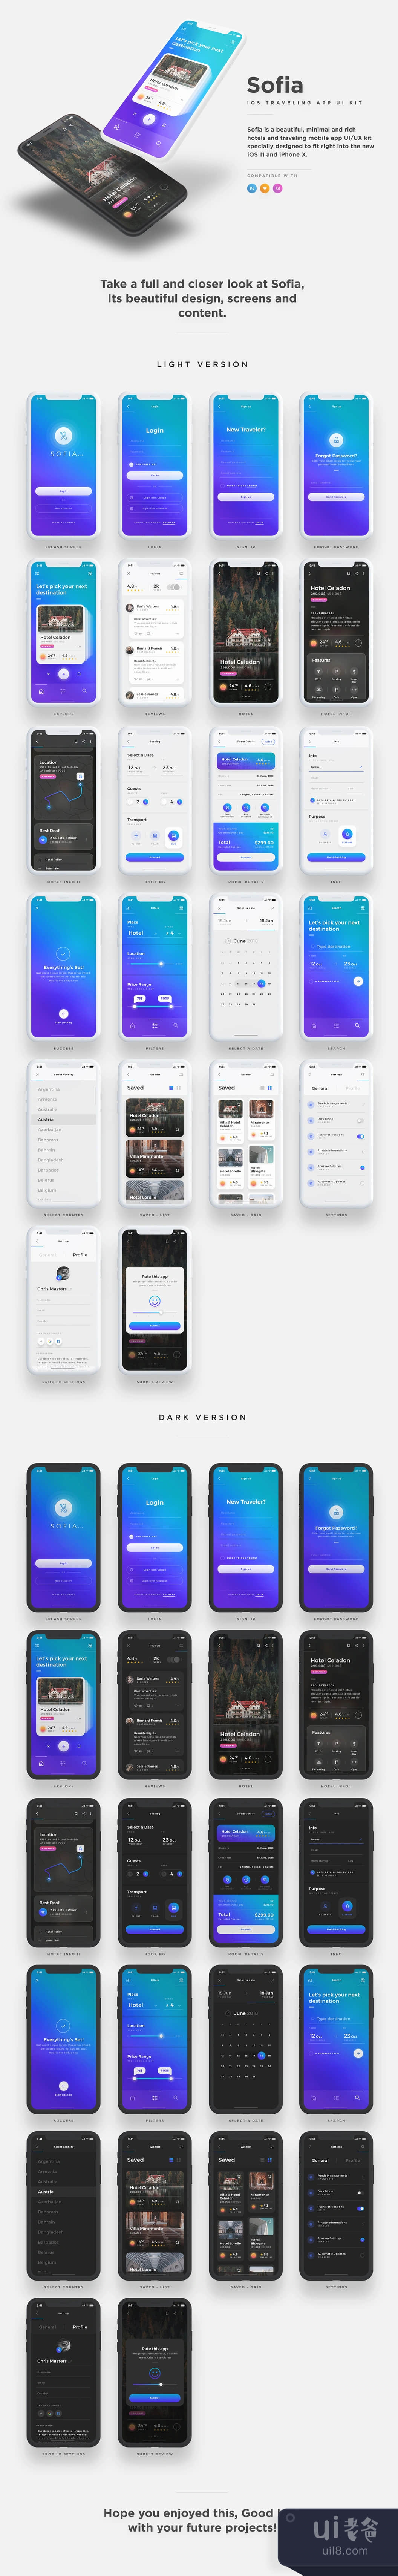 索菲亚iOS UI套件 (Sofia iOS UI Kit)插图1